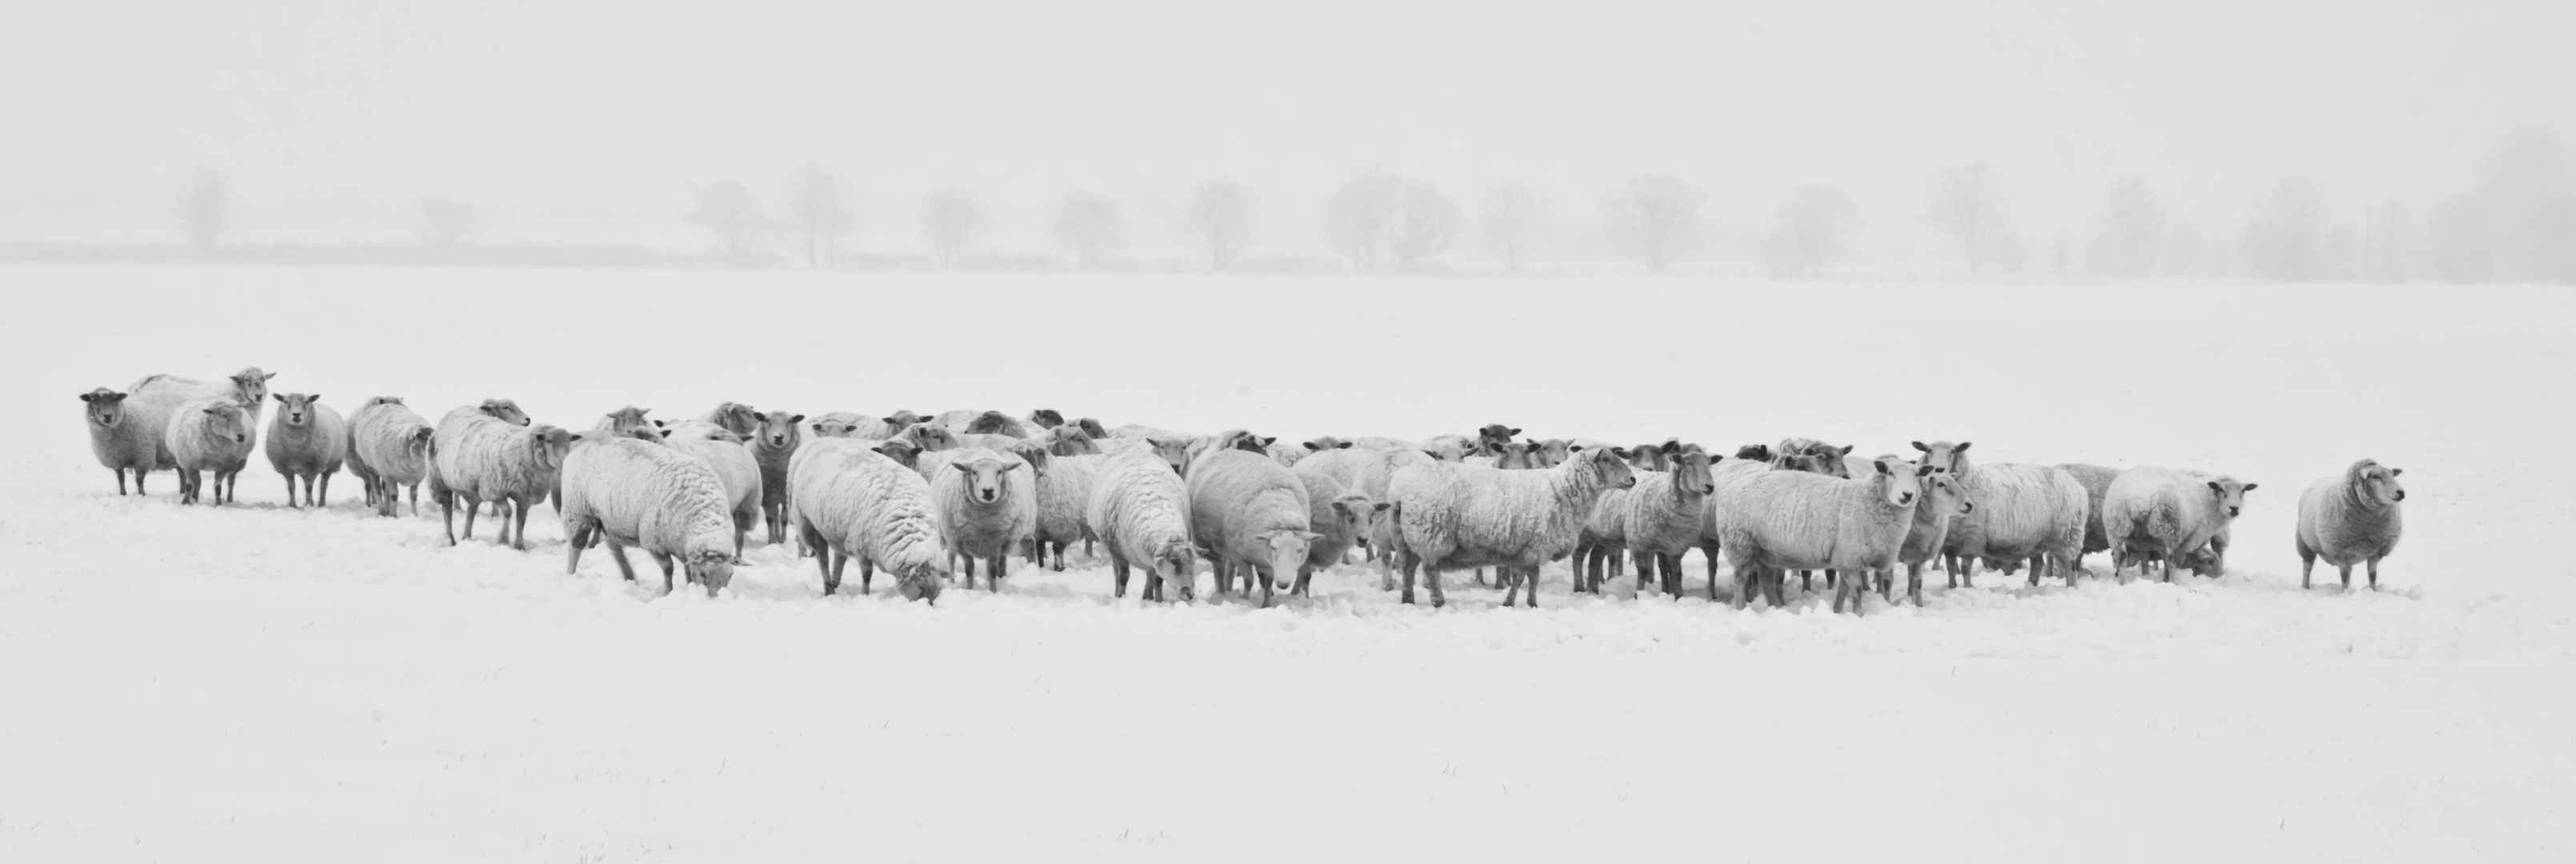 冬天 雪 羊 动物 8K图片